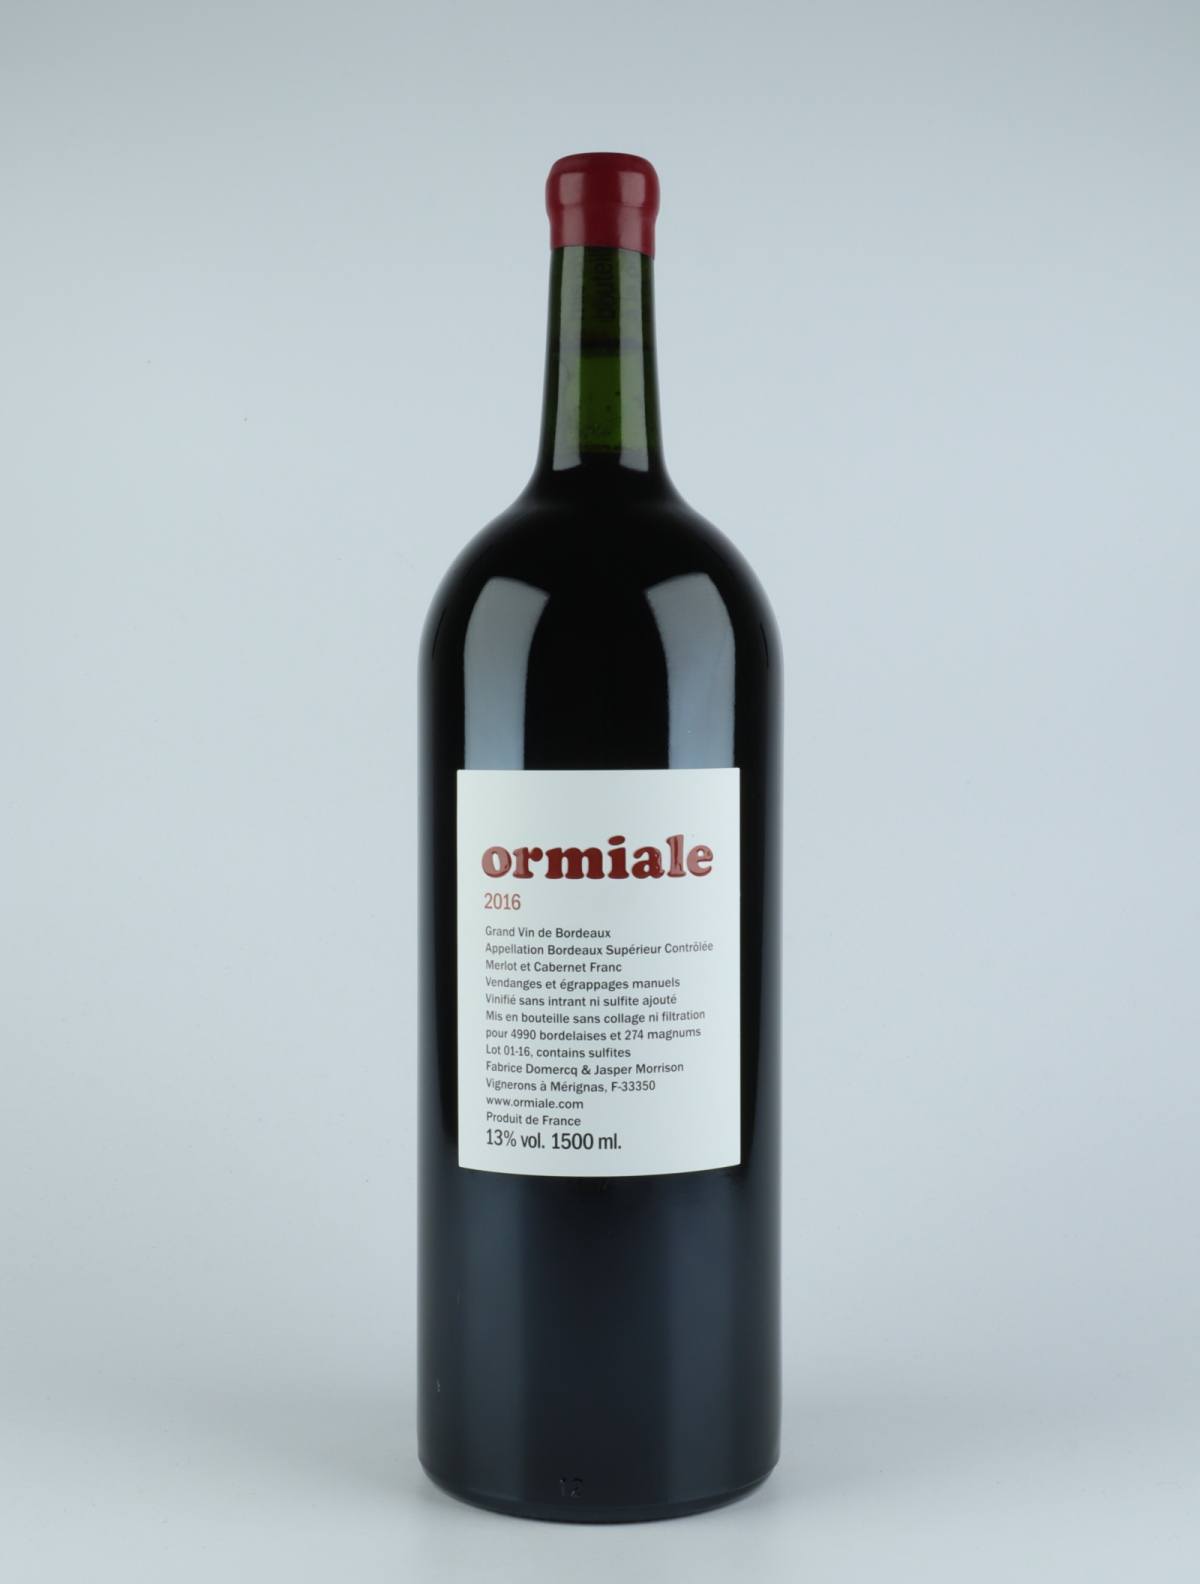 En flaske 2016 Ormiale Rødvin fra Ormiale, Bordeaux i Frankrig